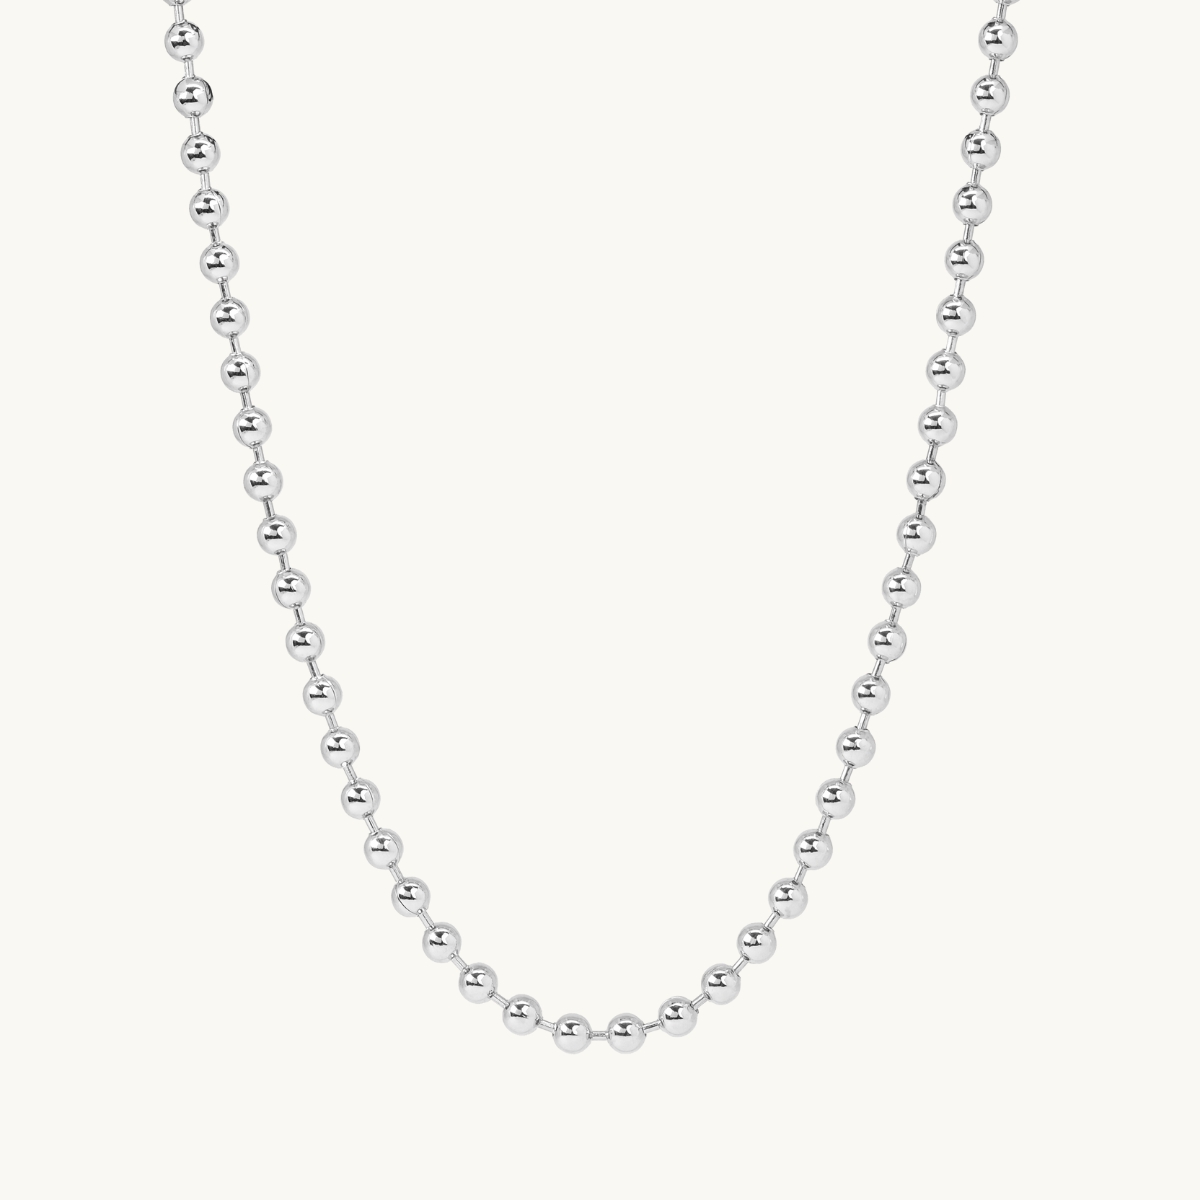 Necklace chain big globe silver